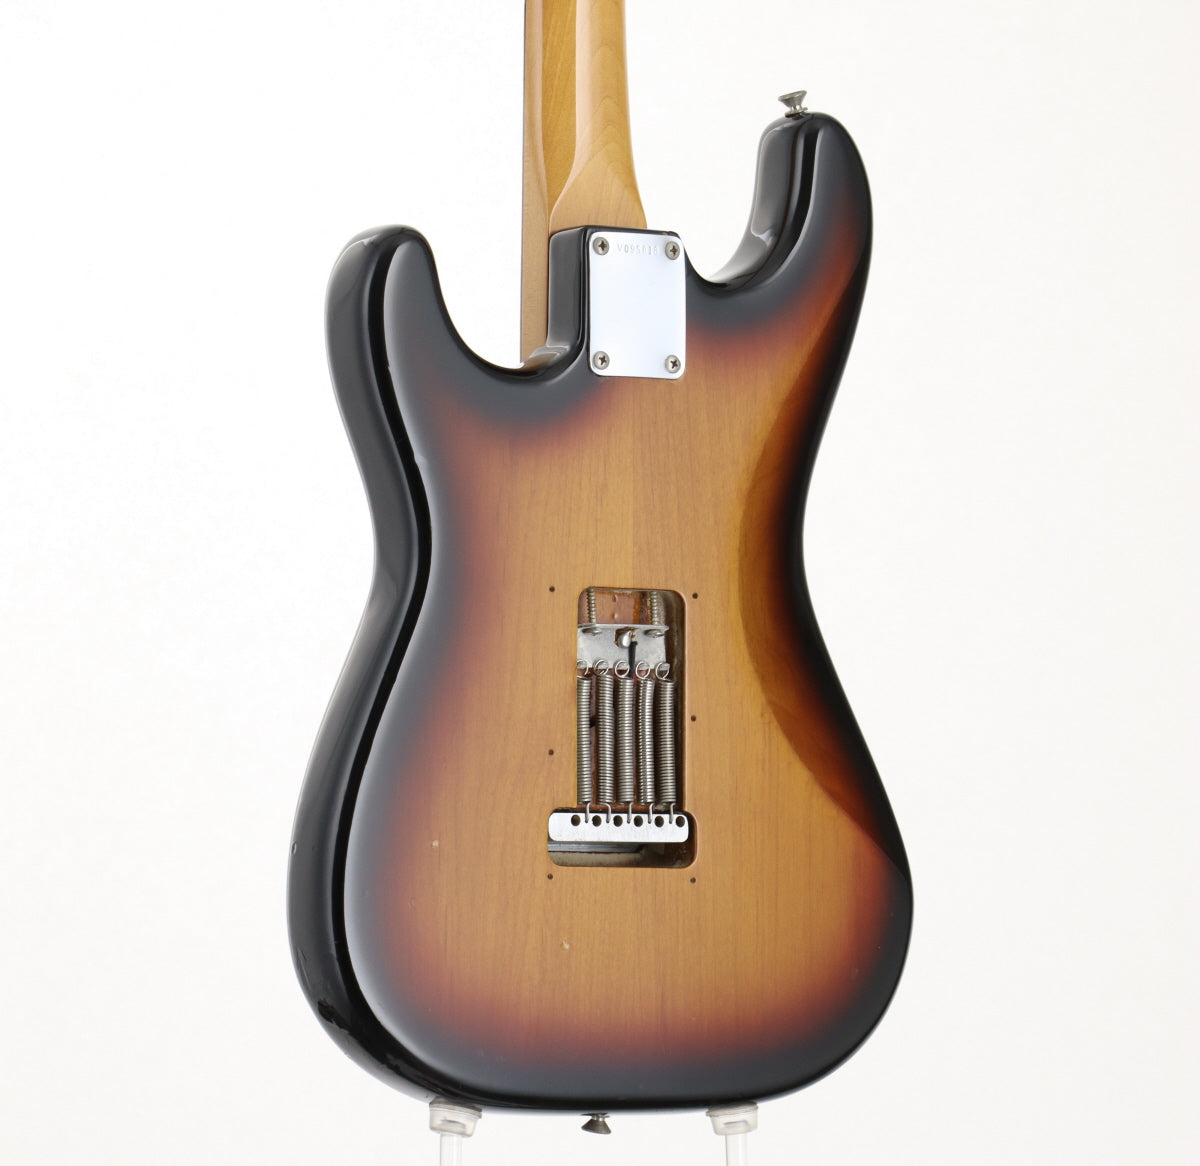 [SN V095818] USED Fender / American Vintage 62 Stratocaster 3-Color Sunburst, 1996 [09]